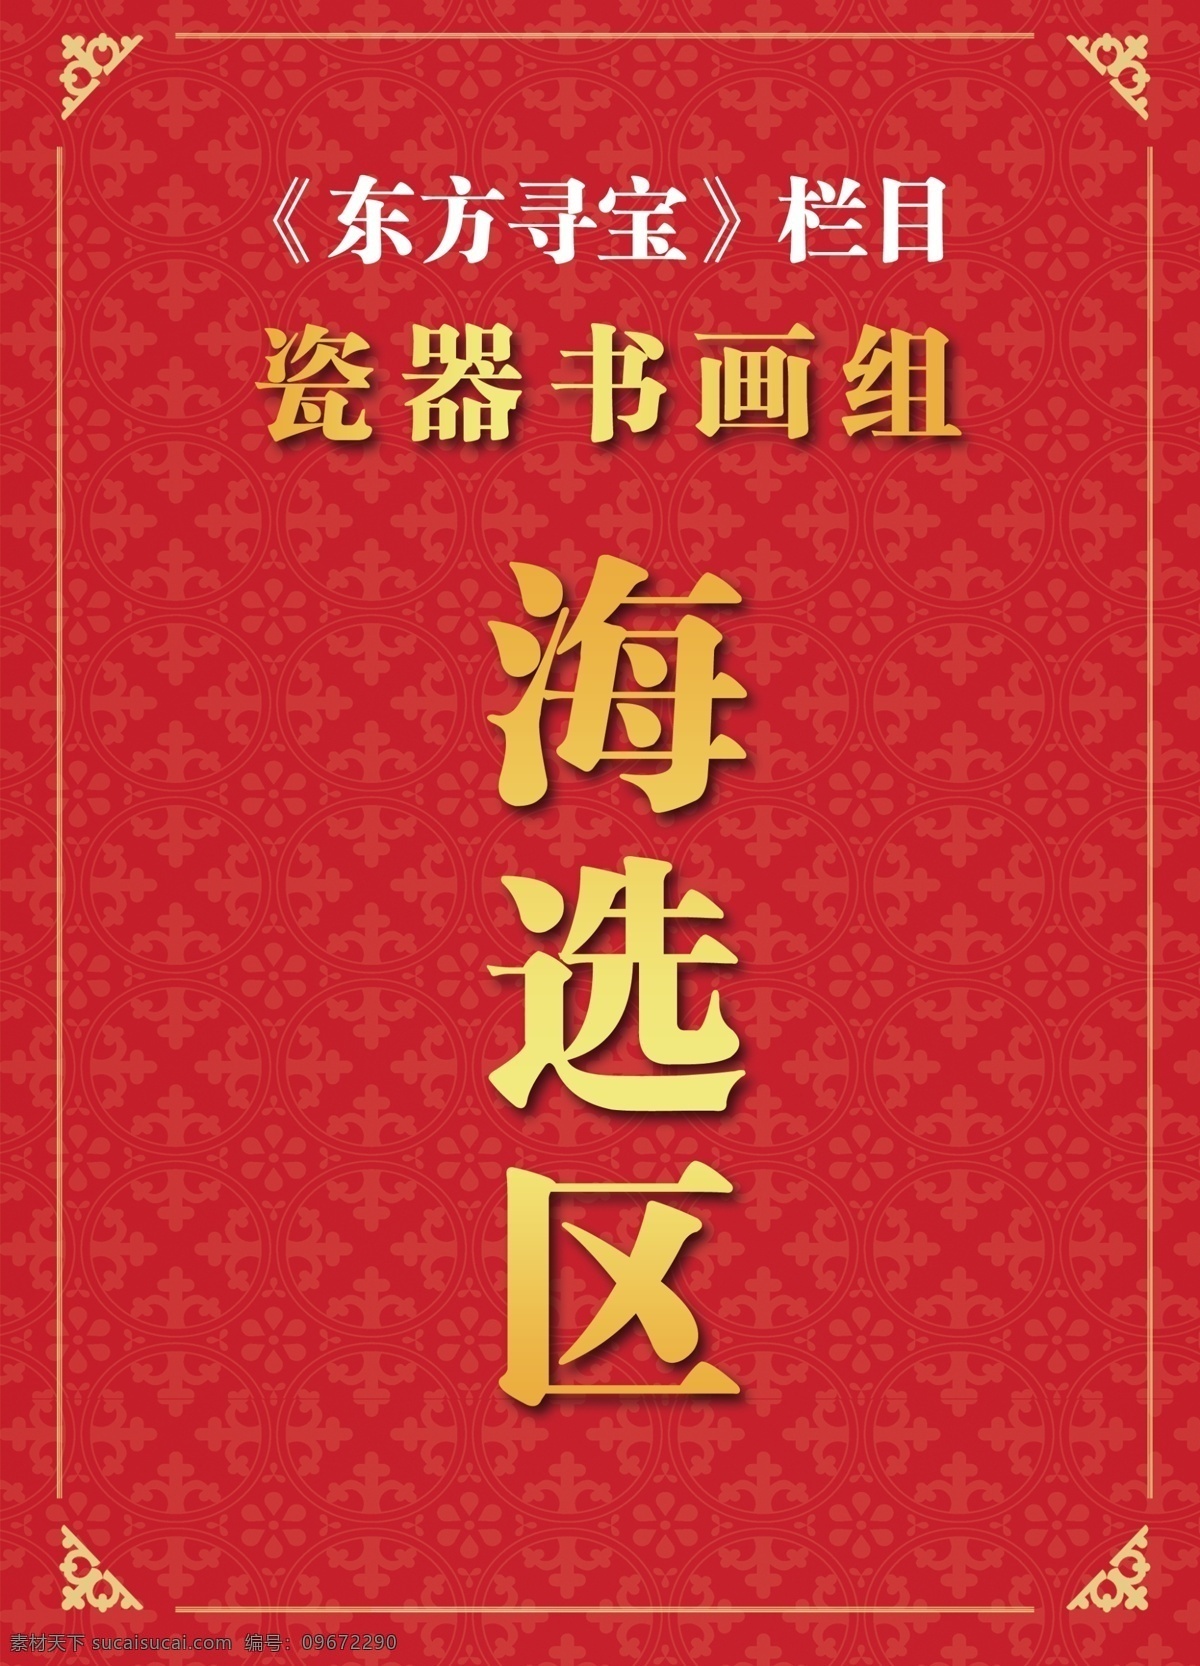 瓷器书画组 海选区 大红 封面 古典 酒店引导牌 红色